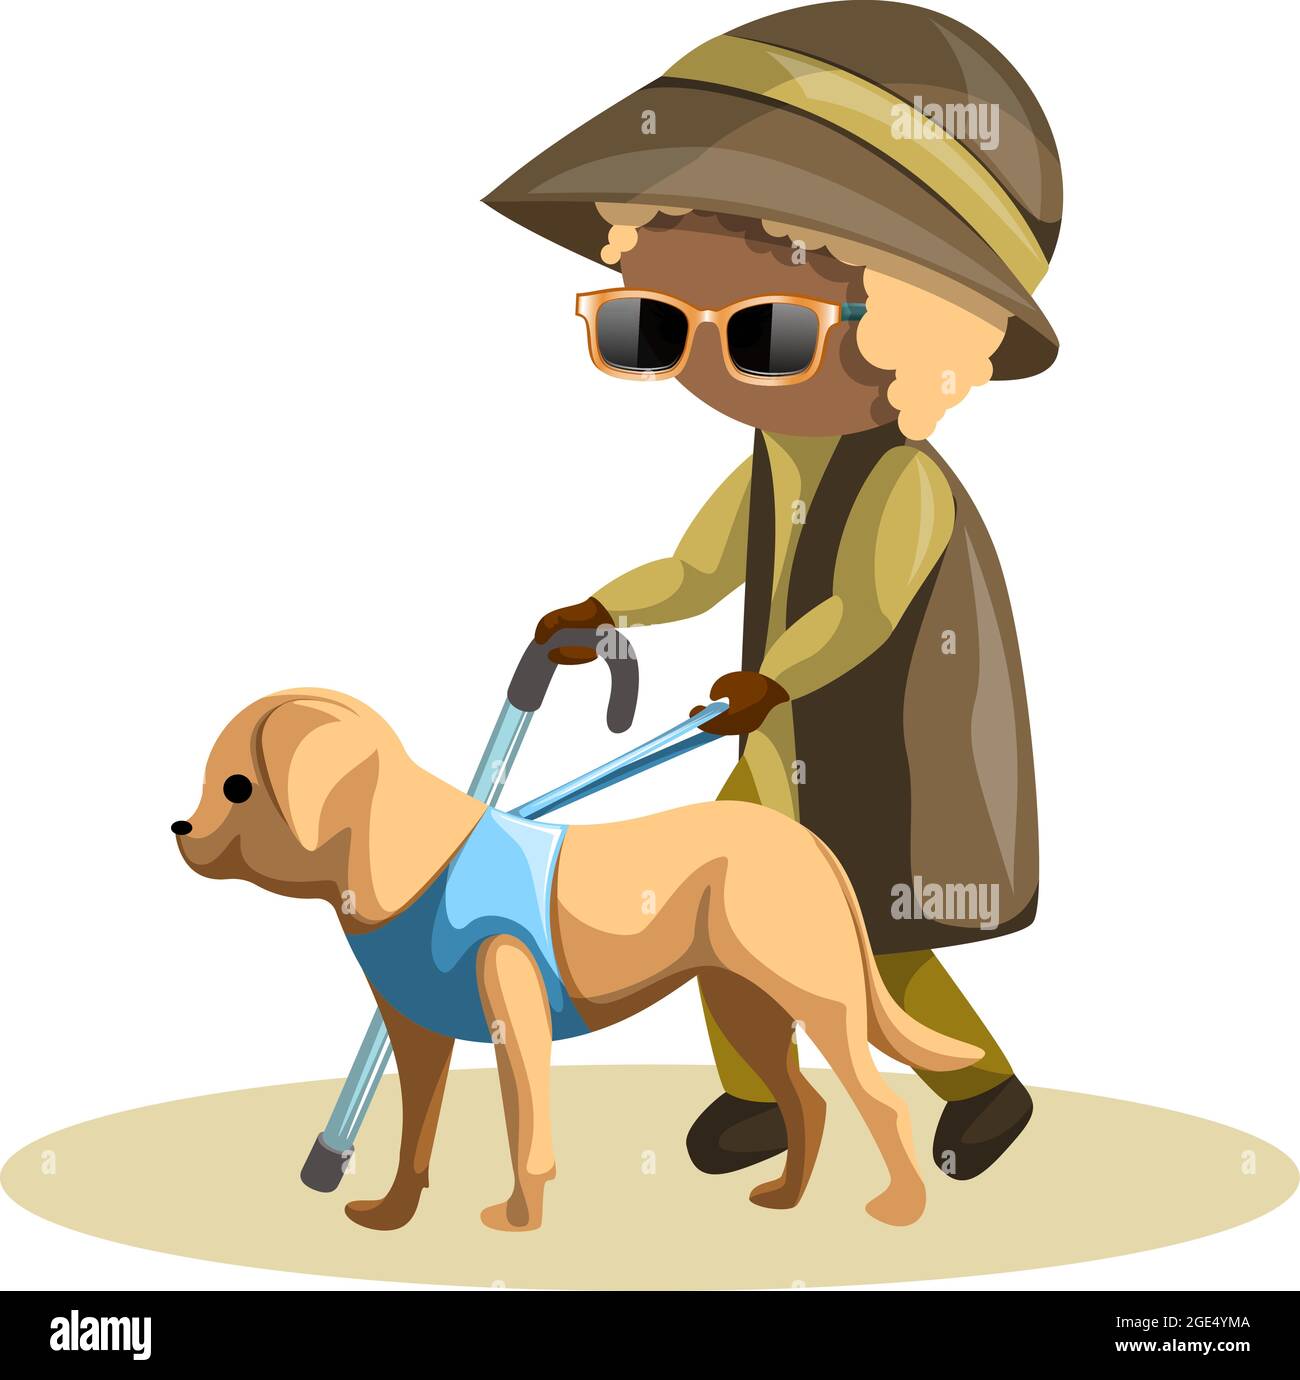 Immagine vettoriale di una nonna cieca con un cane guida al guinzaglio. Stile cartone animato. EPS 10 Illustrazione Vettoriale